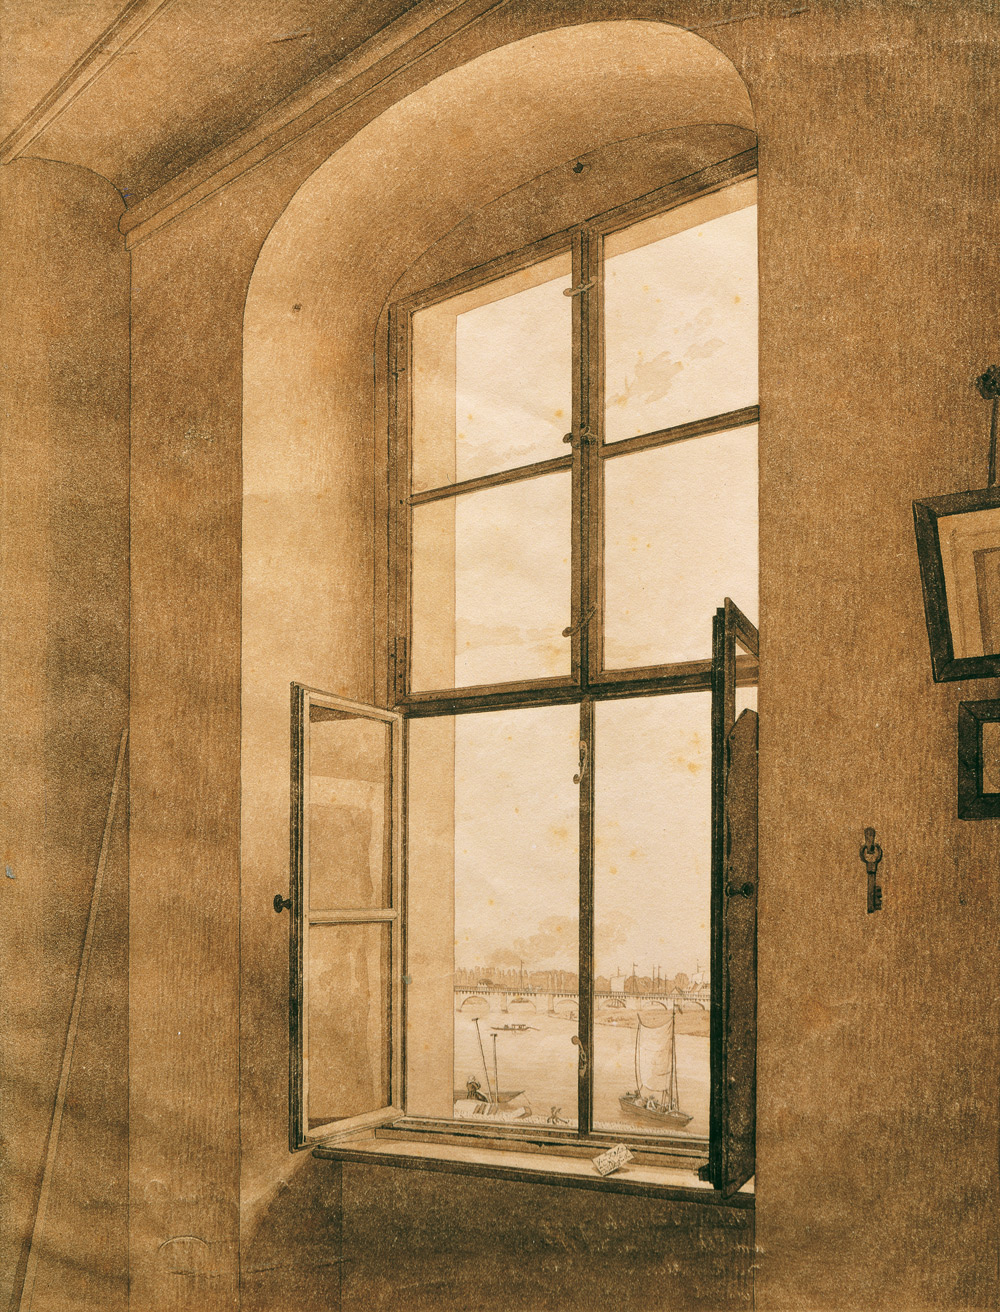 Caspar David Friedrich, Vista dallo studio dell’artista, finestra di sinistra (1805-1806; grafite e seppia su carta, 314 × 235 mm; Vienna, Belvedere) 